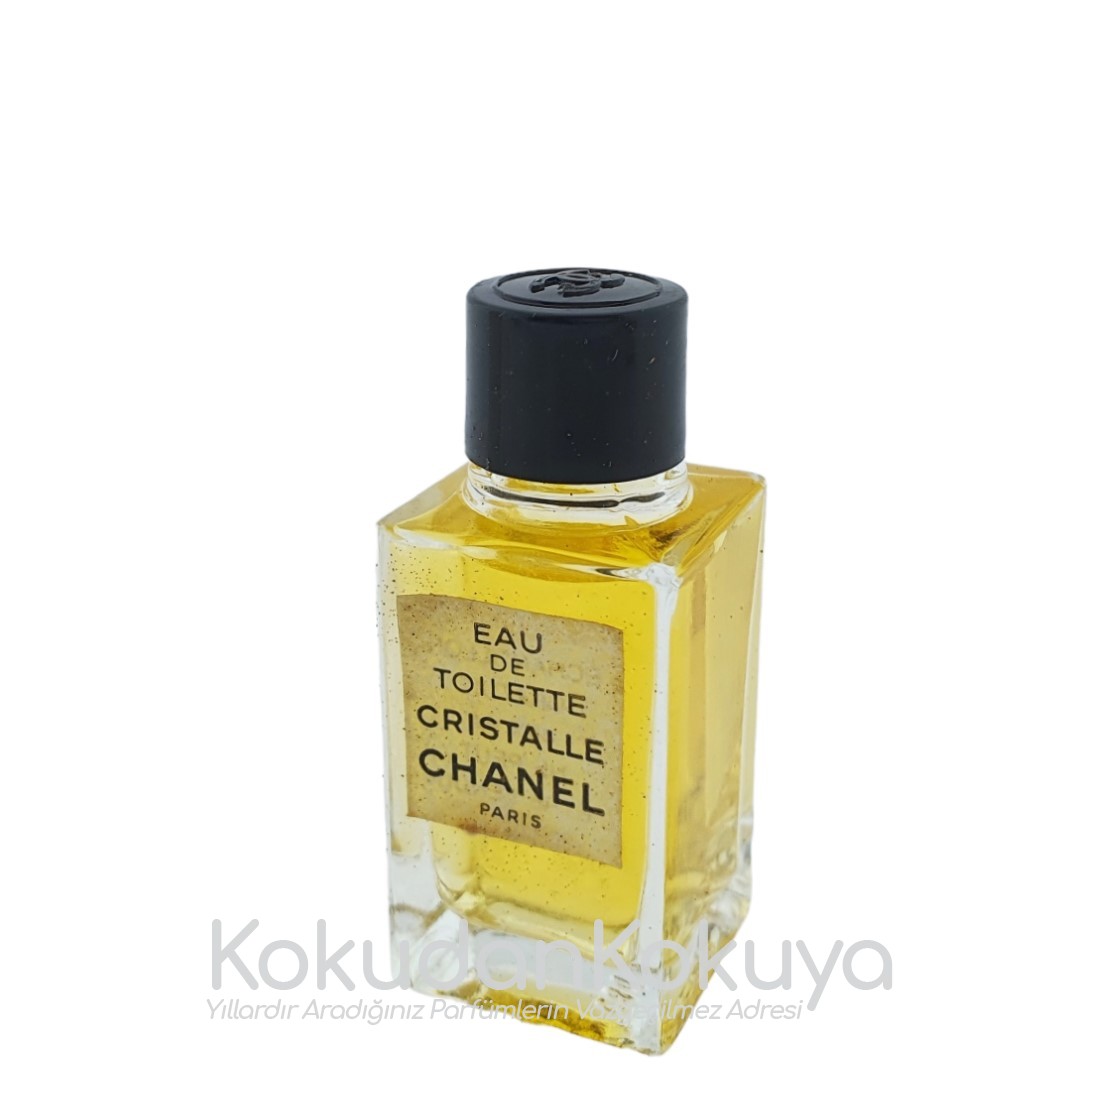 CHANEL Cristalle (Vintage) Parfüm Kadın 4.5ml Minyatür (Mini Perfume) Dökme 